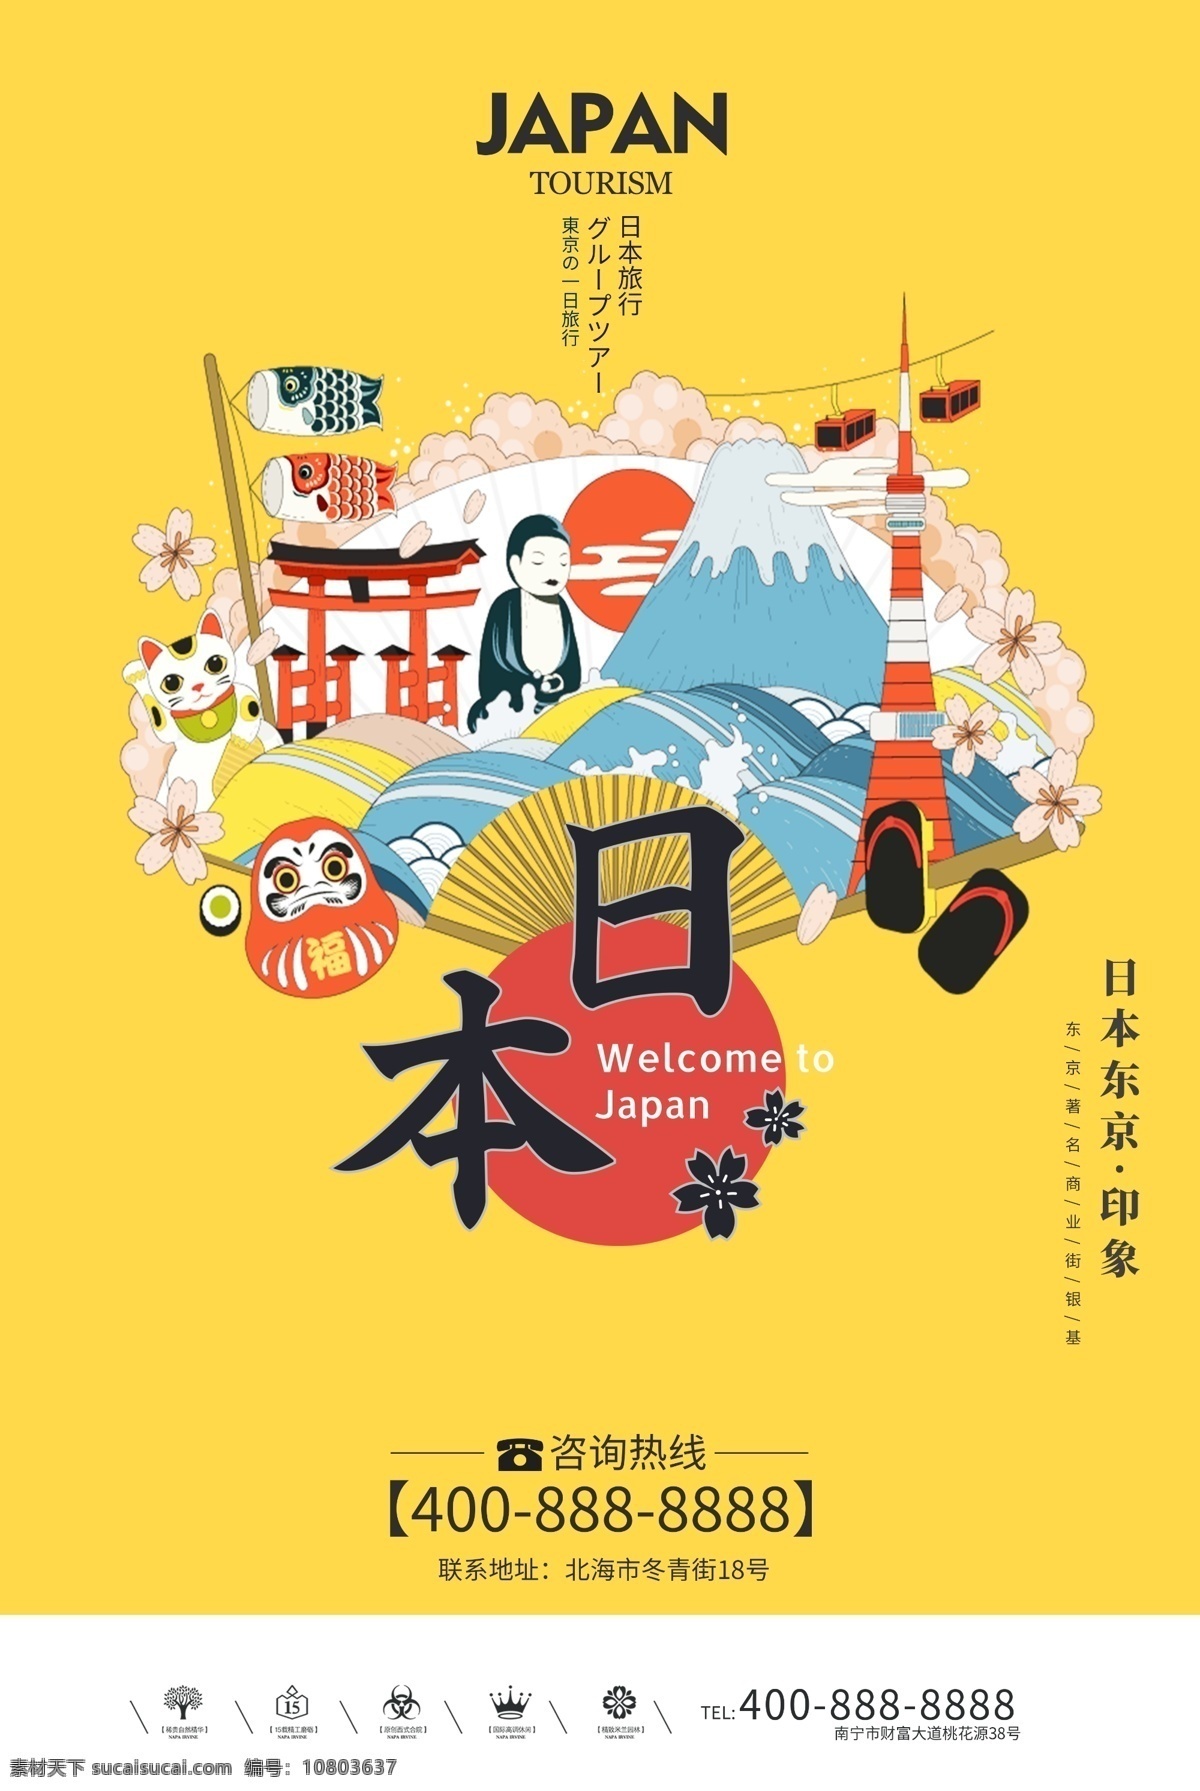 创意 插画 风格 日本旅游 户外 海报 日本风格 日本旅行 东京 大阪 日本印象 日本旅游海报 日本旅游风光 日本旅游景点 日本旅游攻略 日本旅游画册 日本旅游文化 日本建筑 免费模版 创意风格